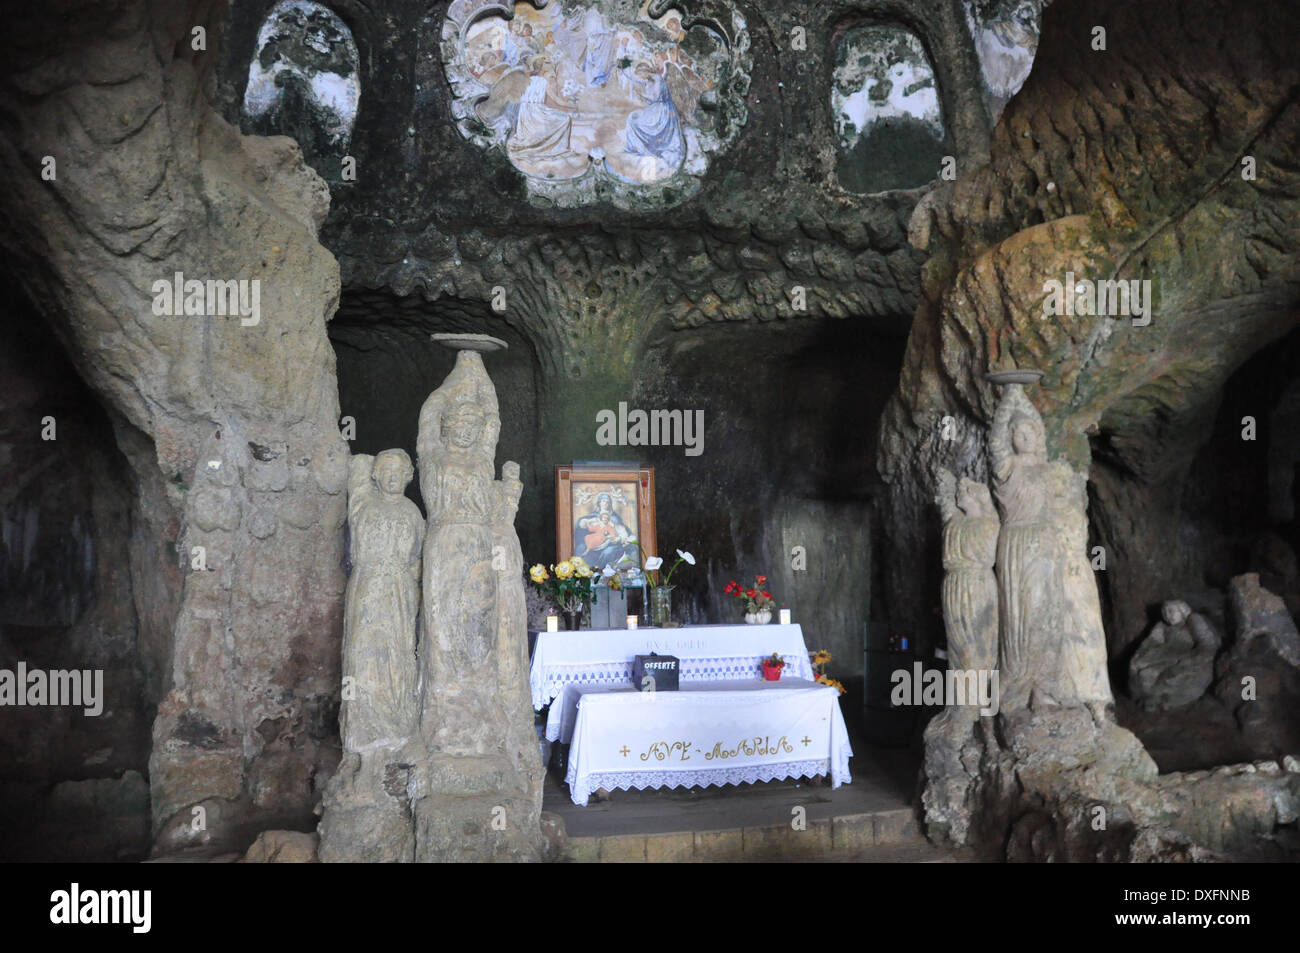 La Chiesetta di, une église de Piedigrotta situé dans une grotte entièrement sculpté en pierre de tuffeau, juste au nord de Pizzo, la Calabre. Banque D'Images